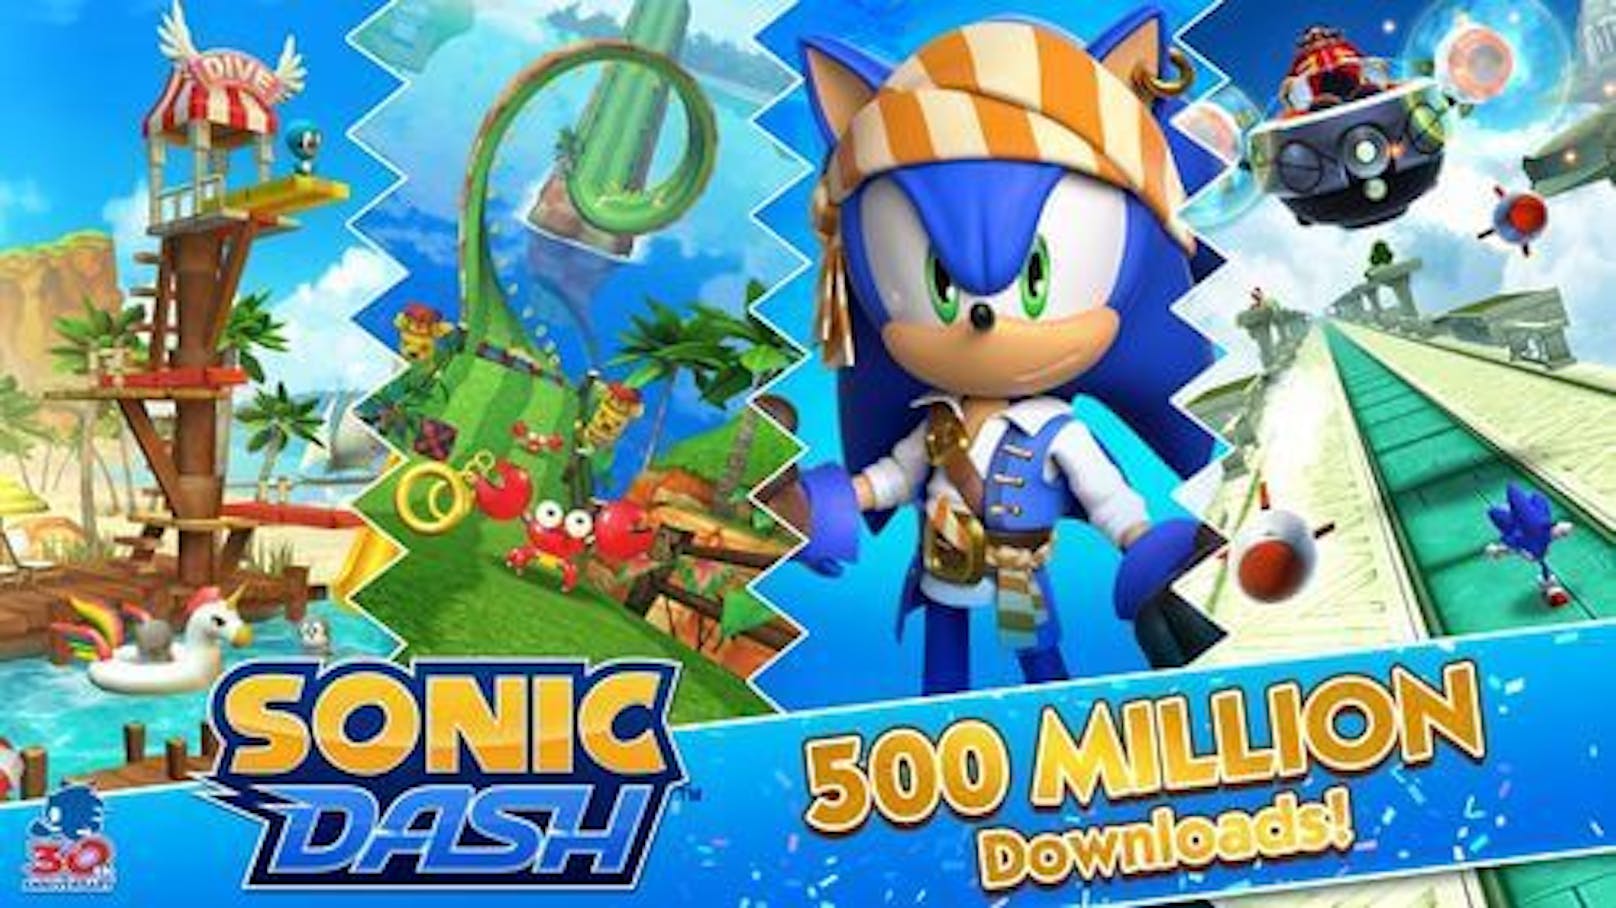 Sonic Dash feiert 500 Millionen Downloads und wird zum meistgespielten Sonic-Titel für mobile Geräte.